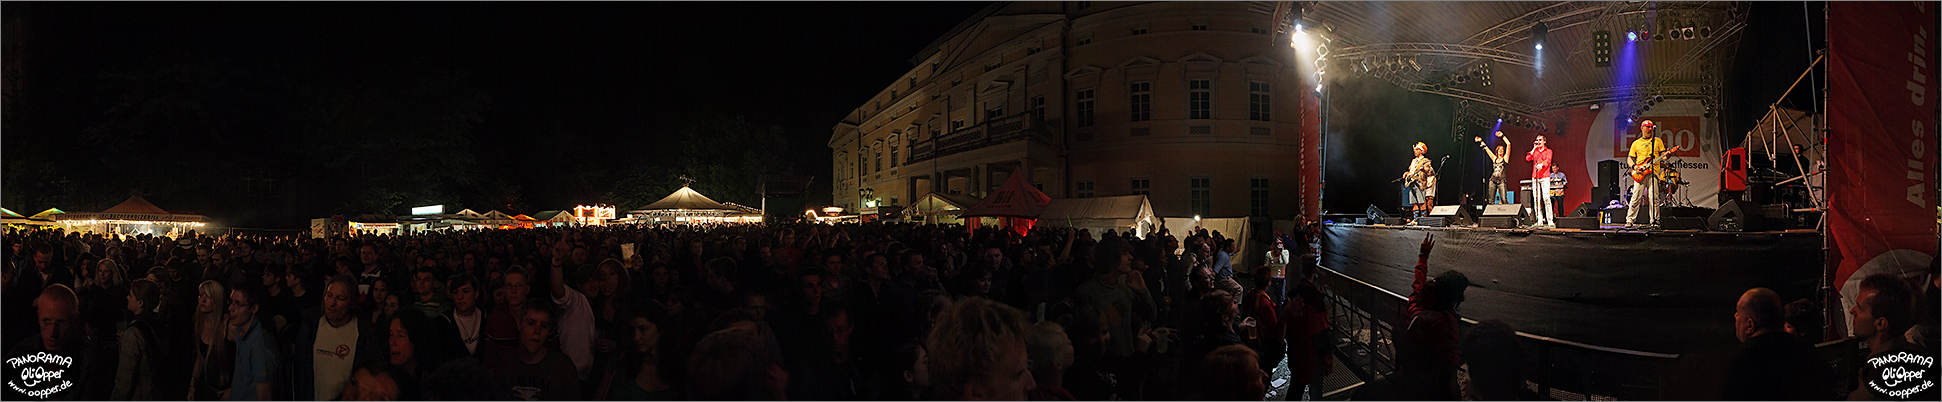 Darmstadt - Schlossgrabenfest 2007 - (c) by Oliver Opper